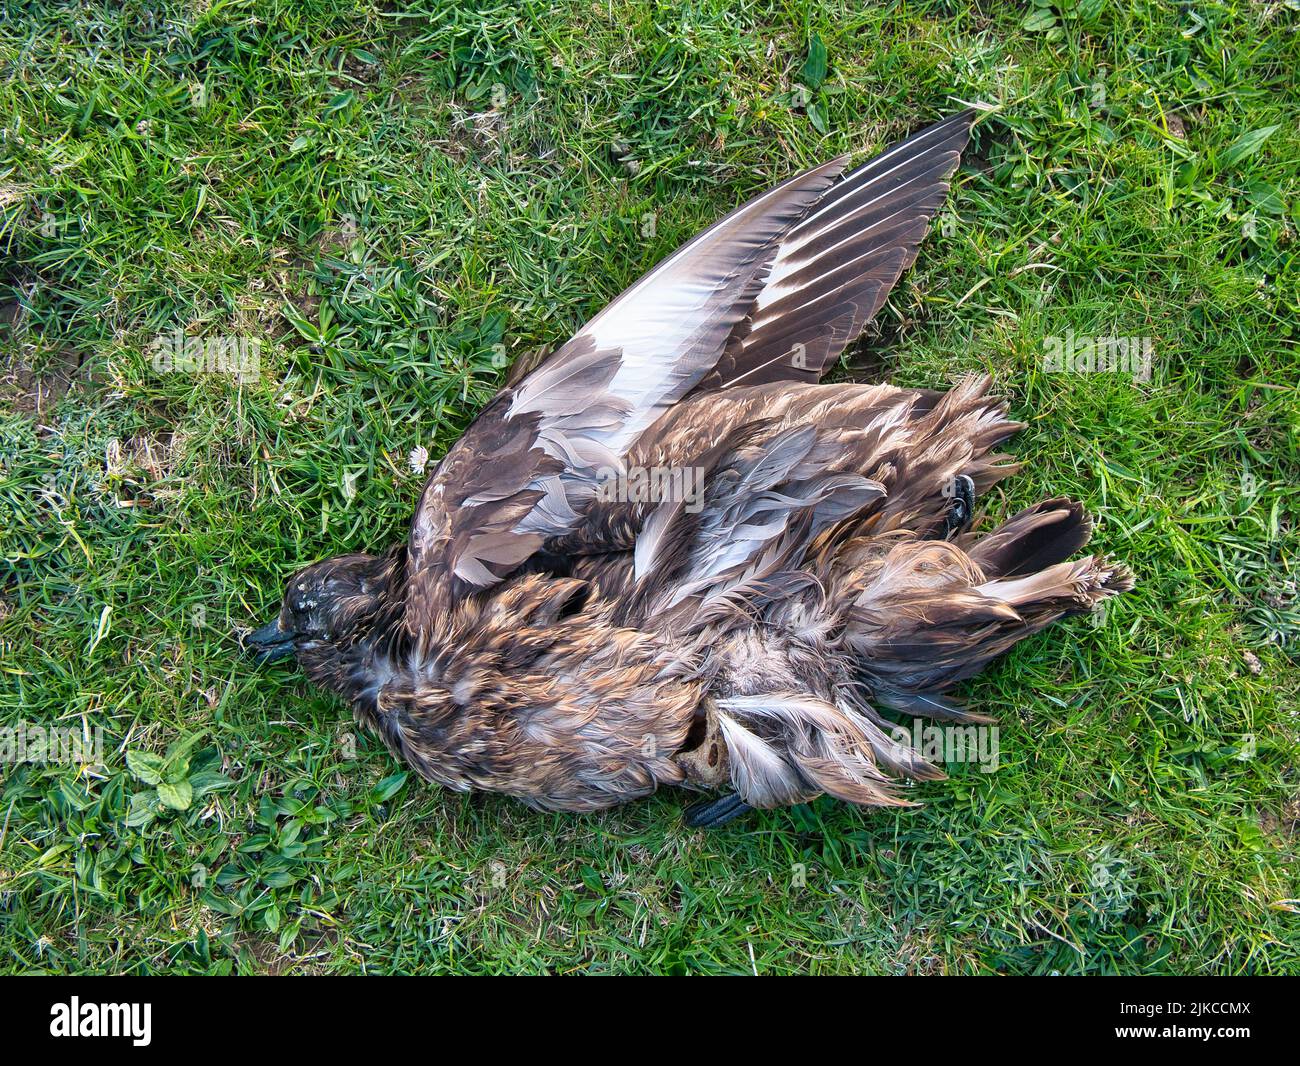 Un gran skua muerto, también conocido como bonxie, en un campo en el sur de Shetland, Reino Unido. Foto de stock